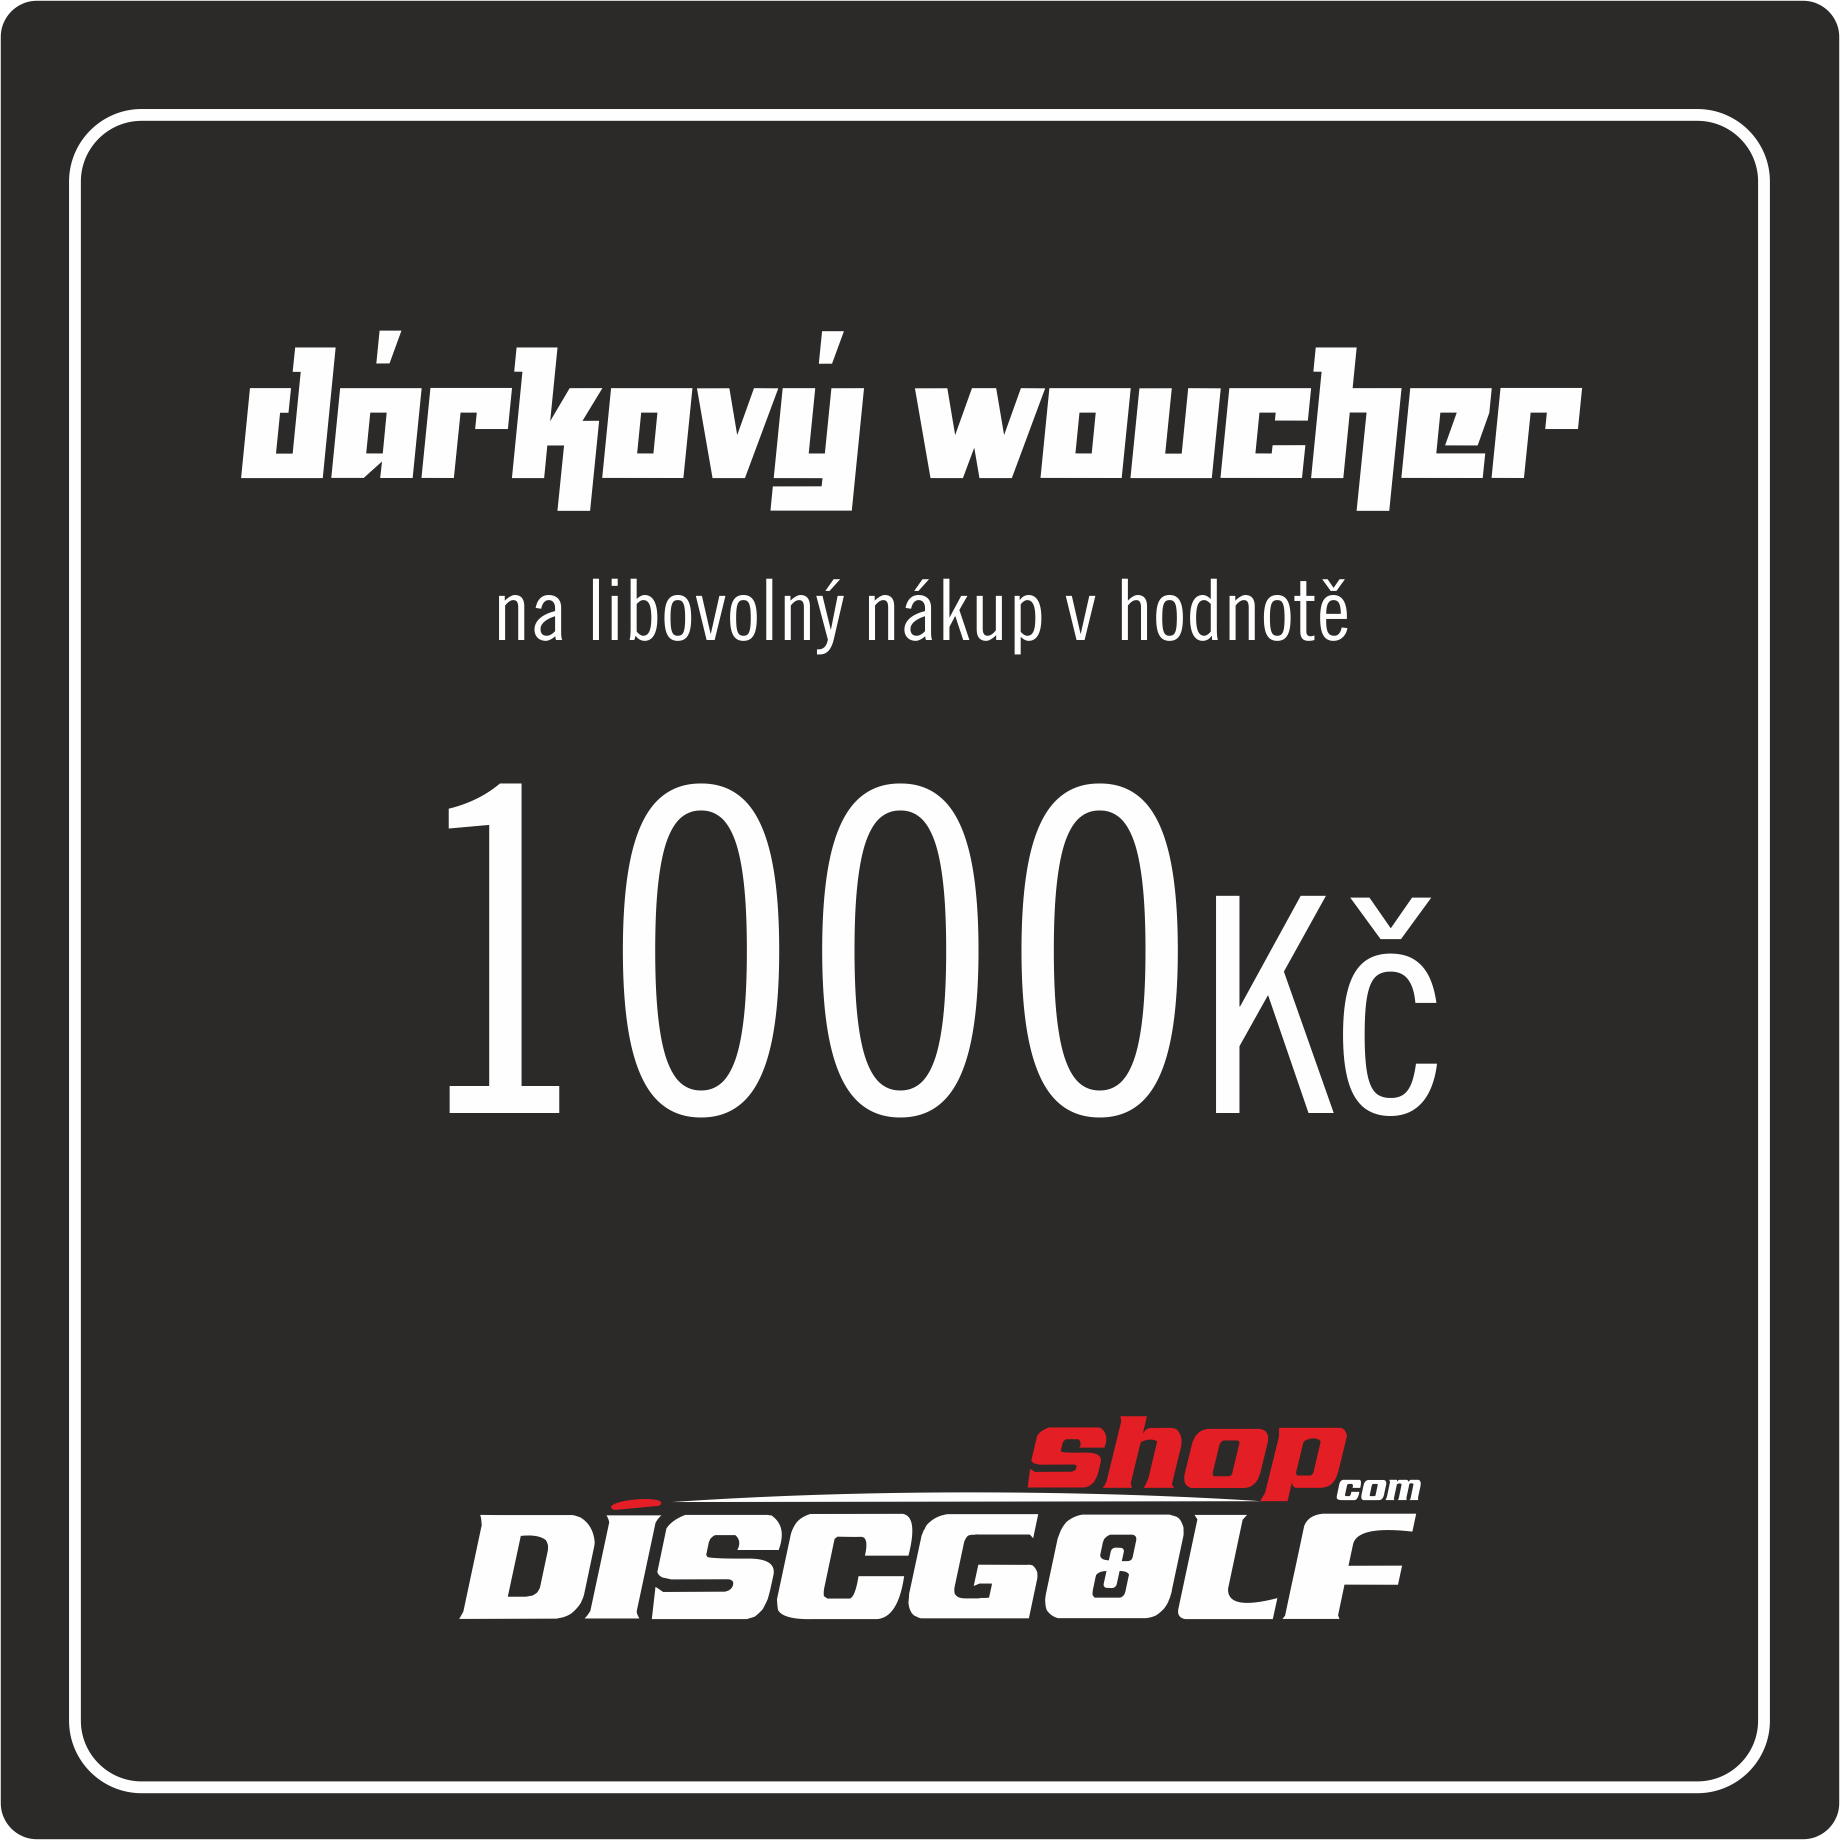 Dárkový woucher - kupon 1000Kč (discgolf)